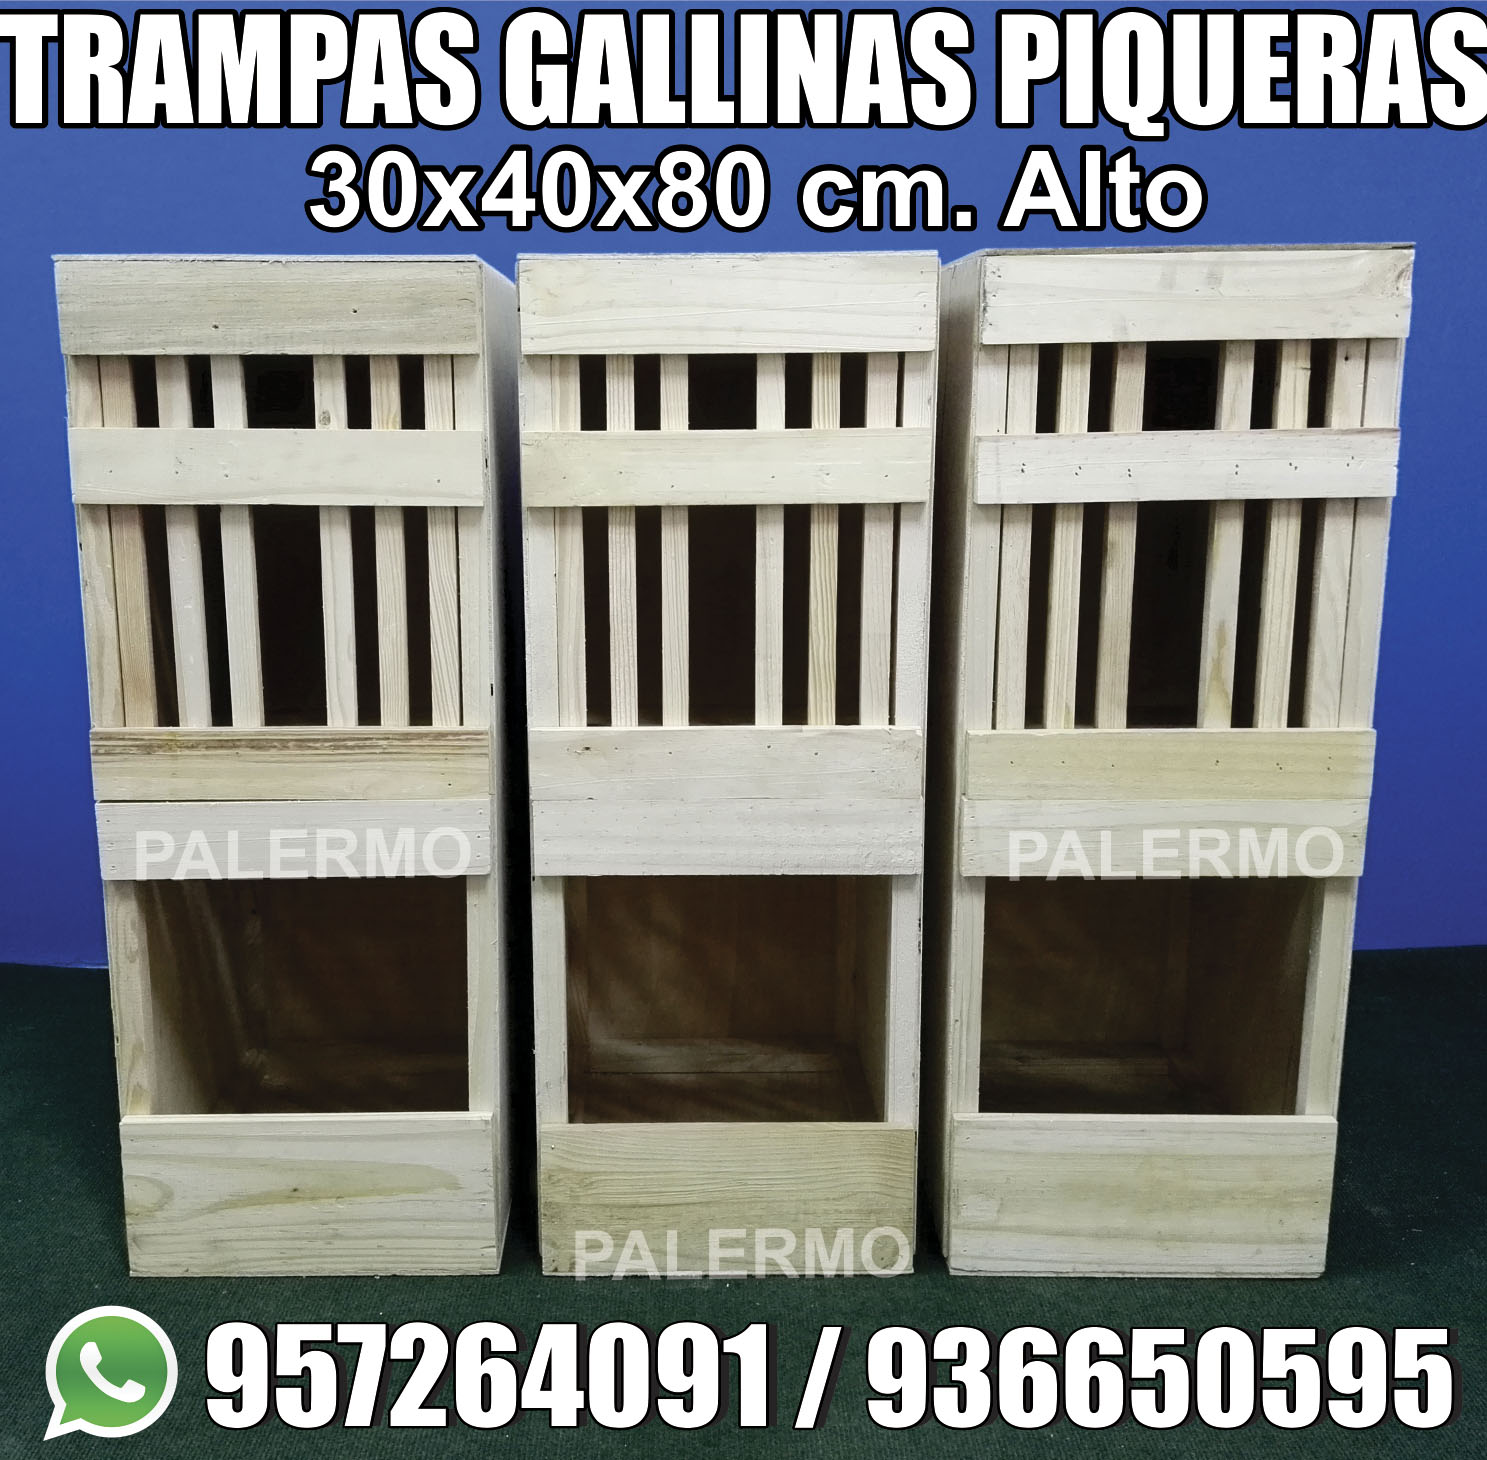 TRAMPAS PIQUERAS PARA GALLINAS 30x40x80cm alto